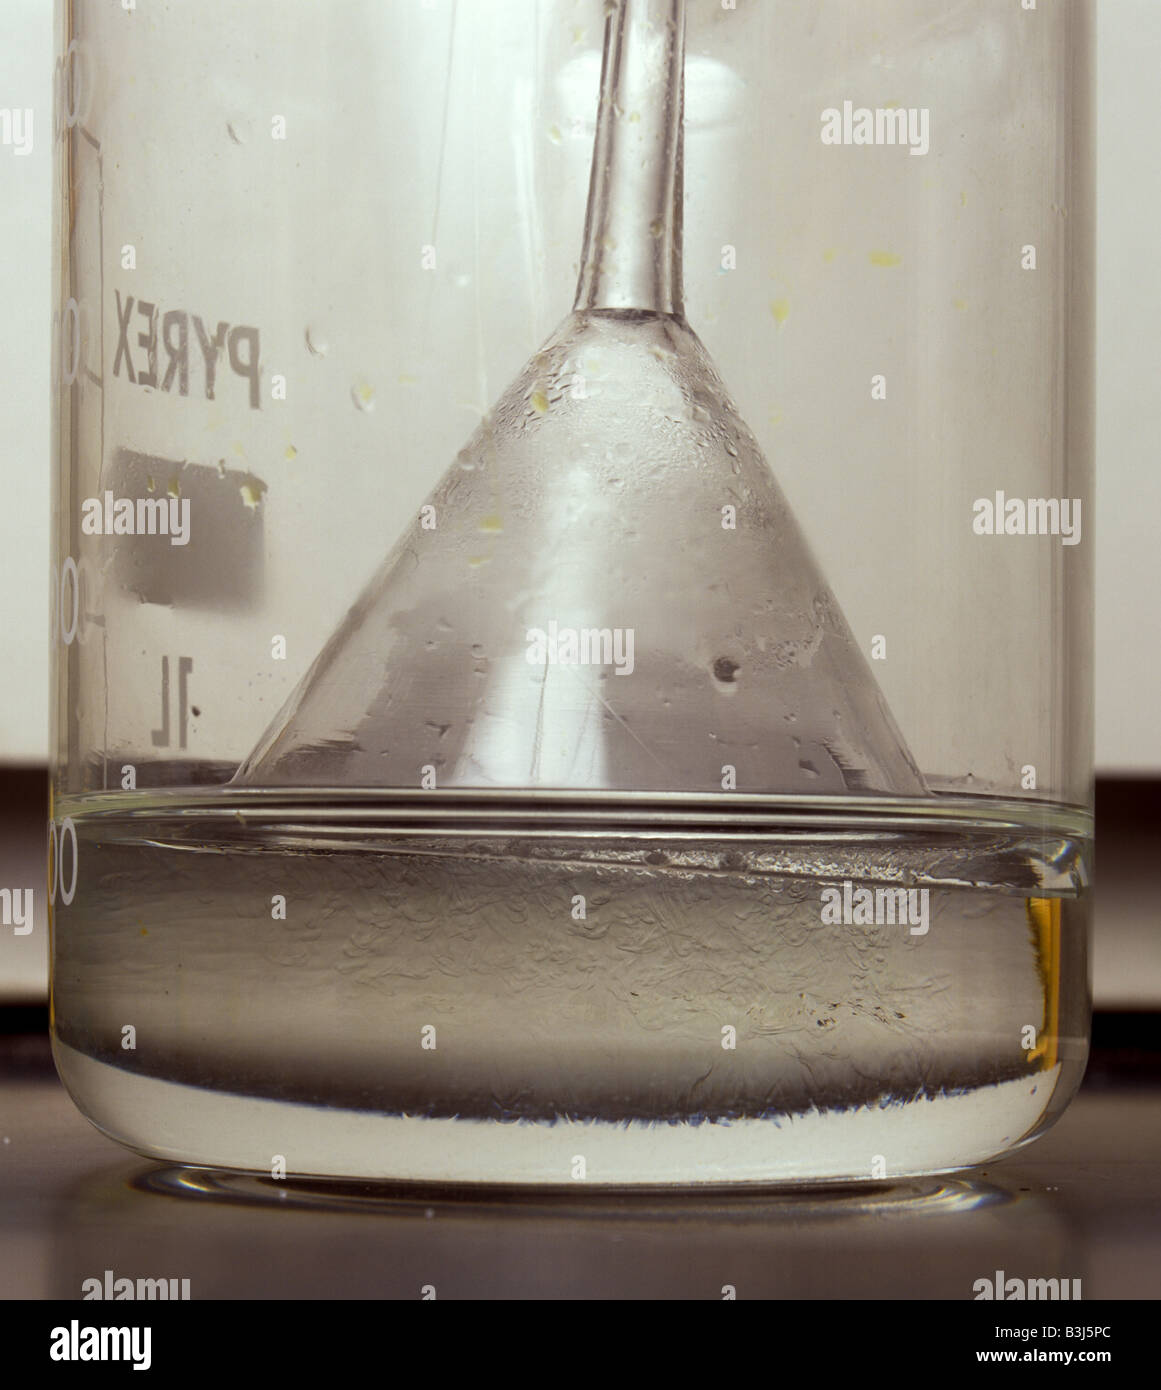 Primer plano de preparación de ácido clorhídrico por disolución de cloruro de hidrógeno en el agua Foto de stock